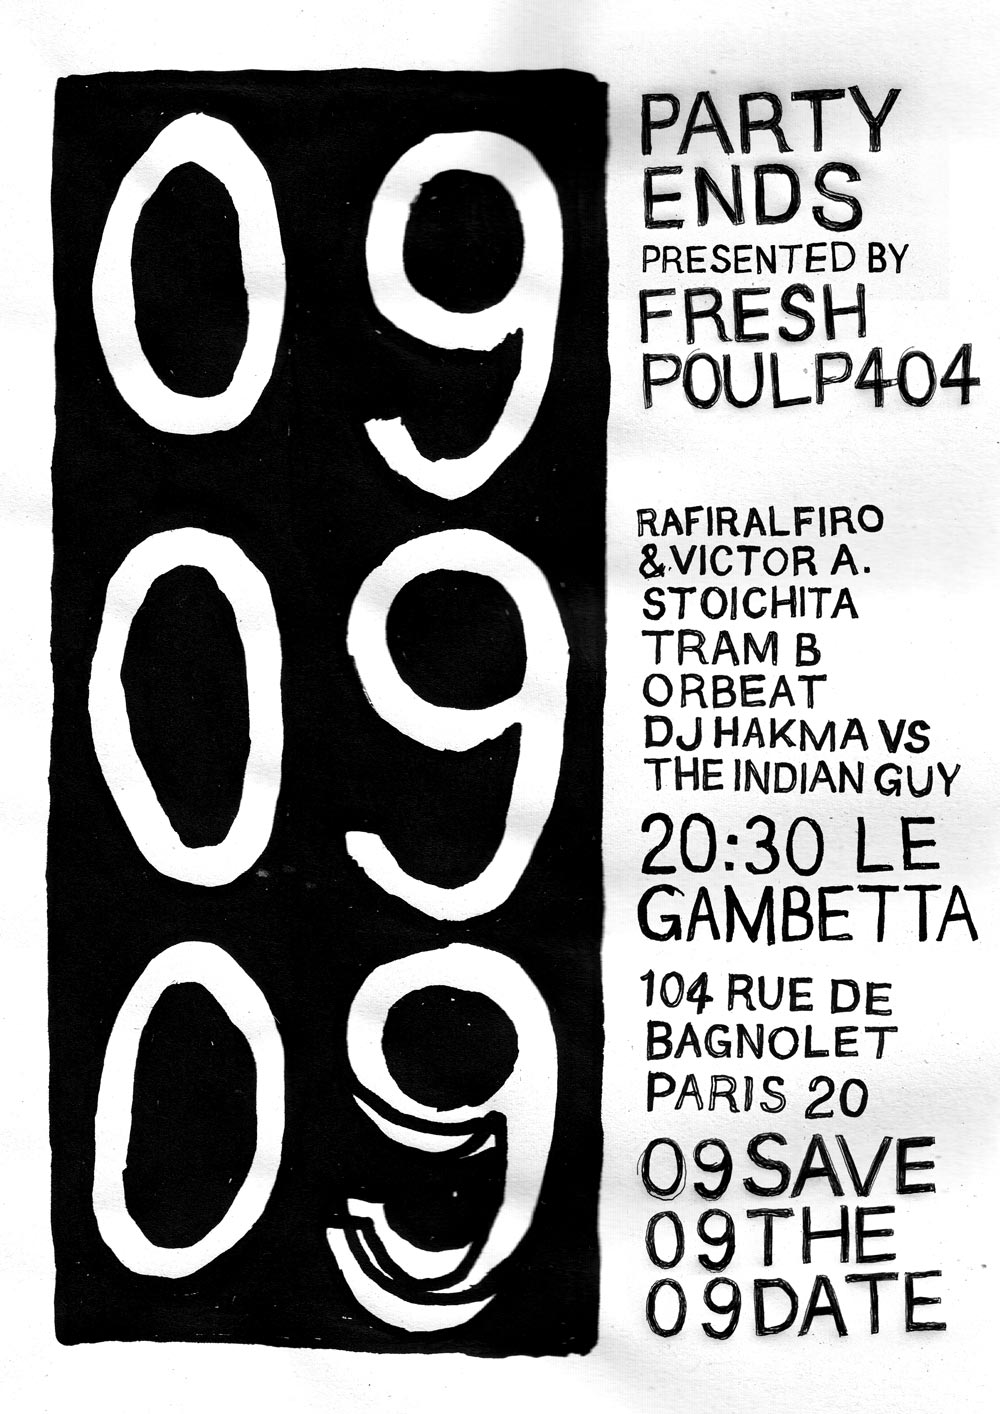 211212 party ends 09 09 09 le gambetta 104 rue de Bagnolet fresh poulp 404